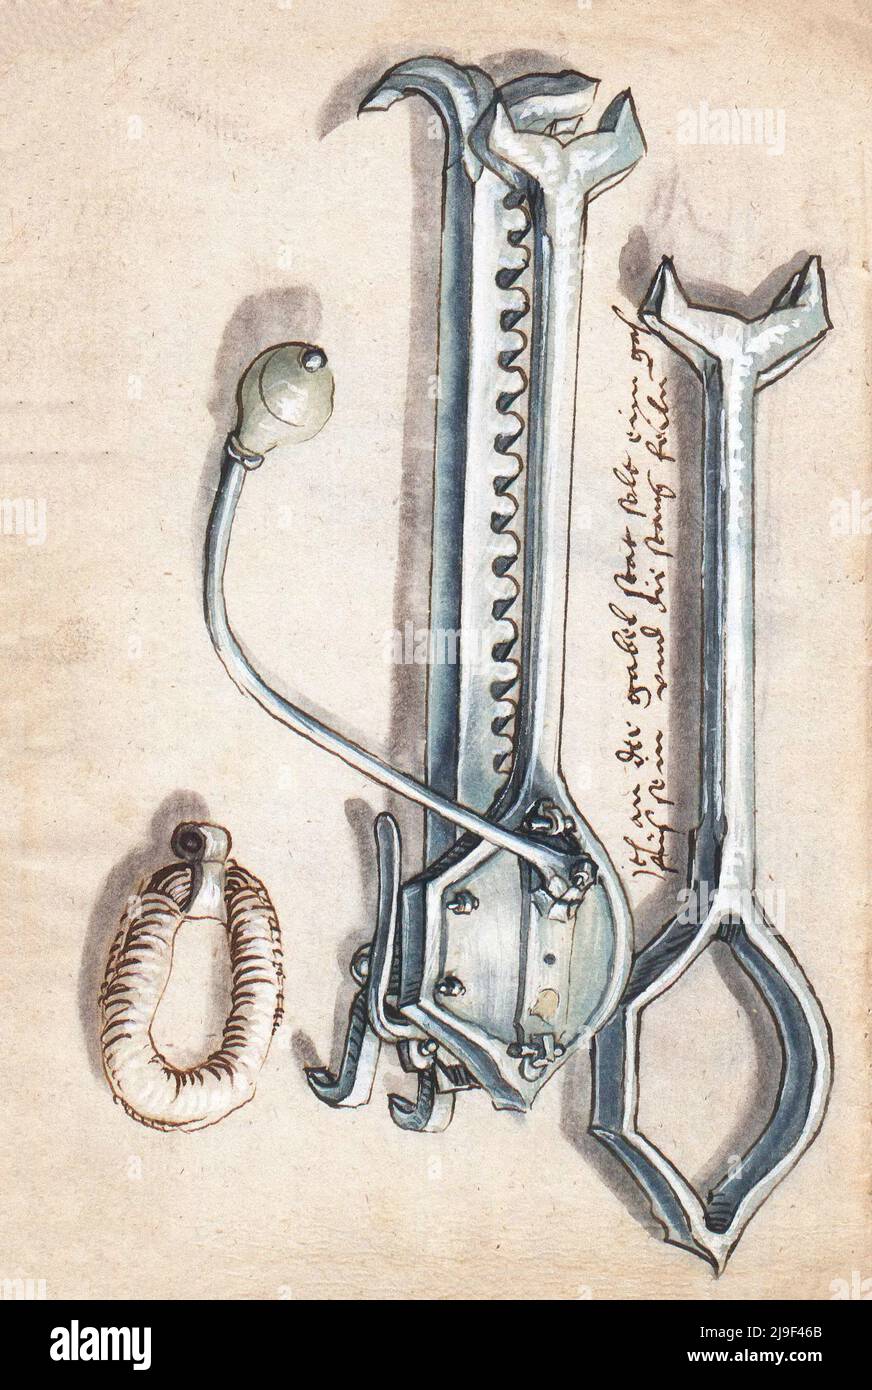 Illustrazione medievale del cranequino di ferro della balestra. Gli strumenti di Martin Löffelholz (1505) Löffelholtz Codex. Illustrazioni e descrizioni di tutti i tipi di sensore Foto Stock